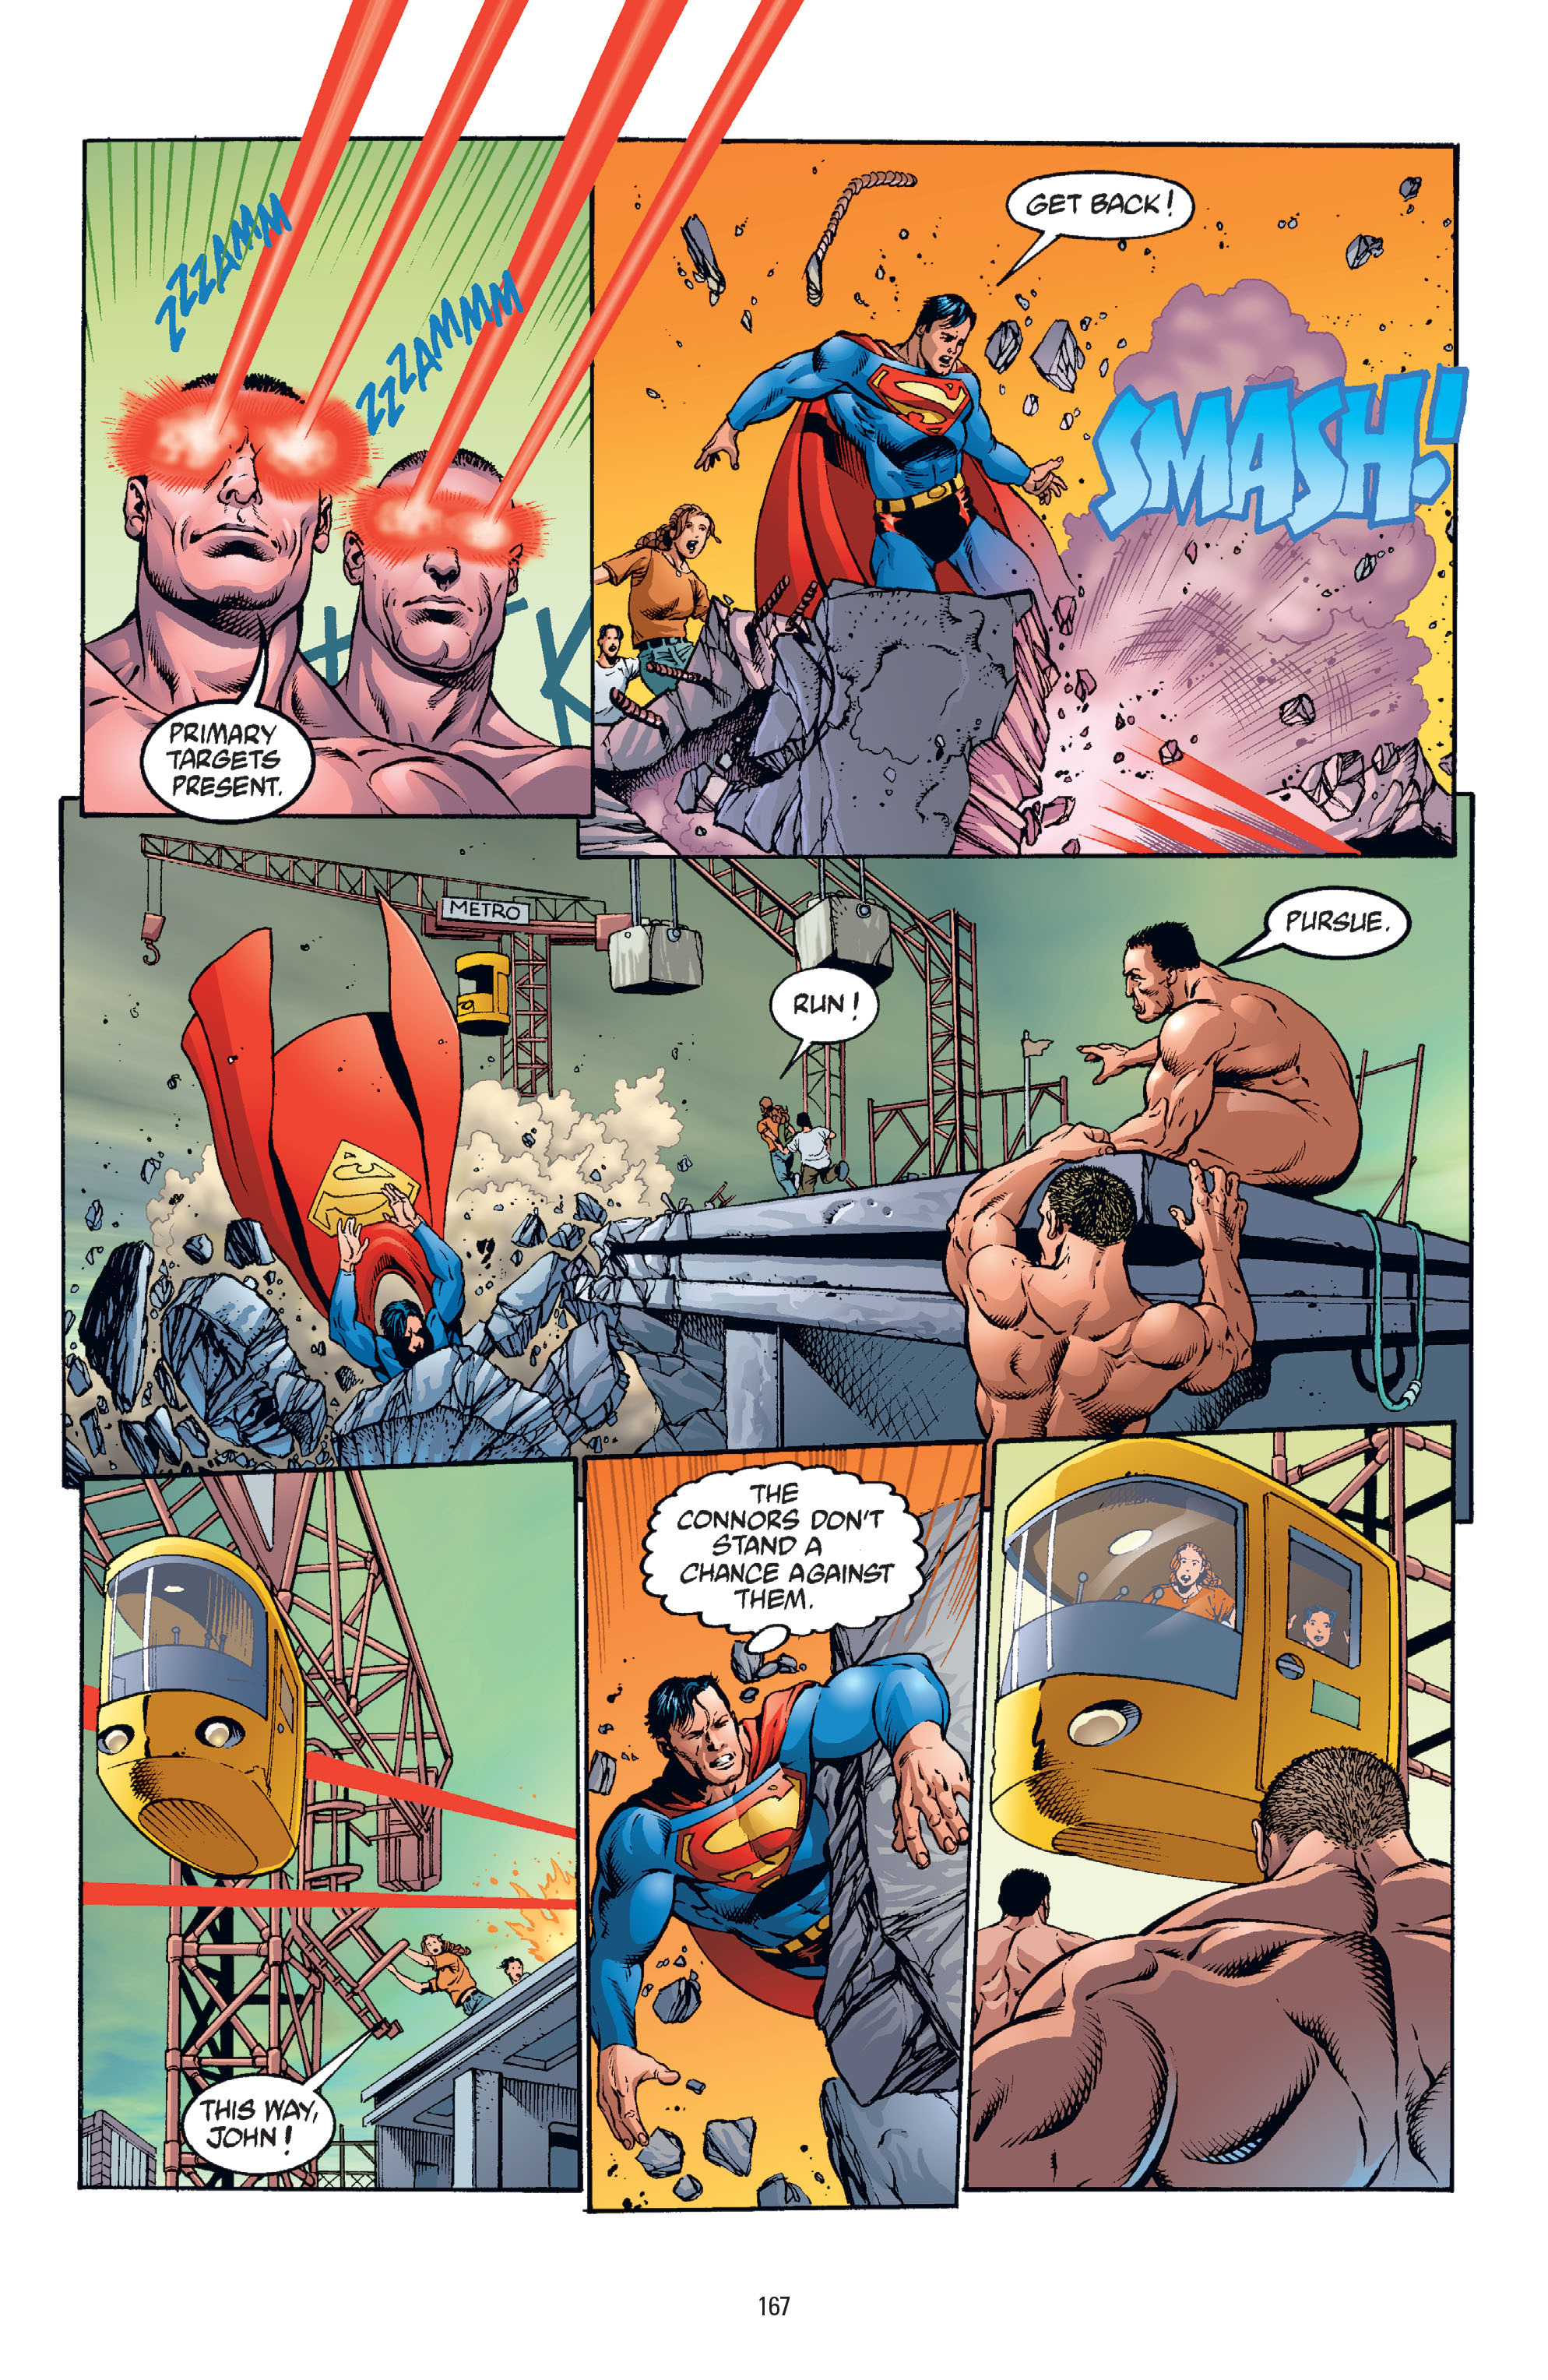 DC Comics/Dark Horse Comics: Justice League Full #1 - English 163